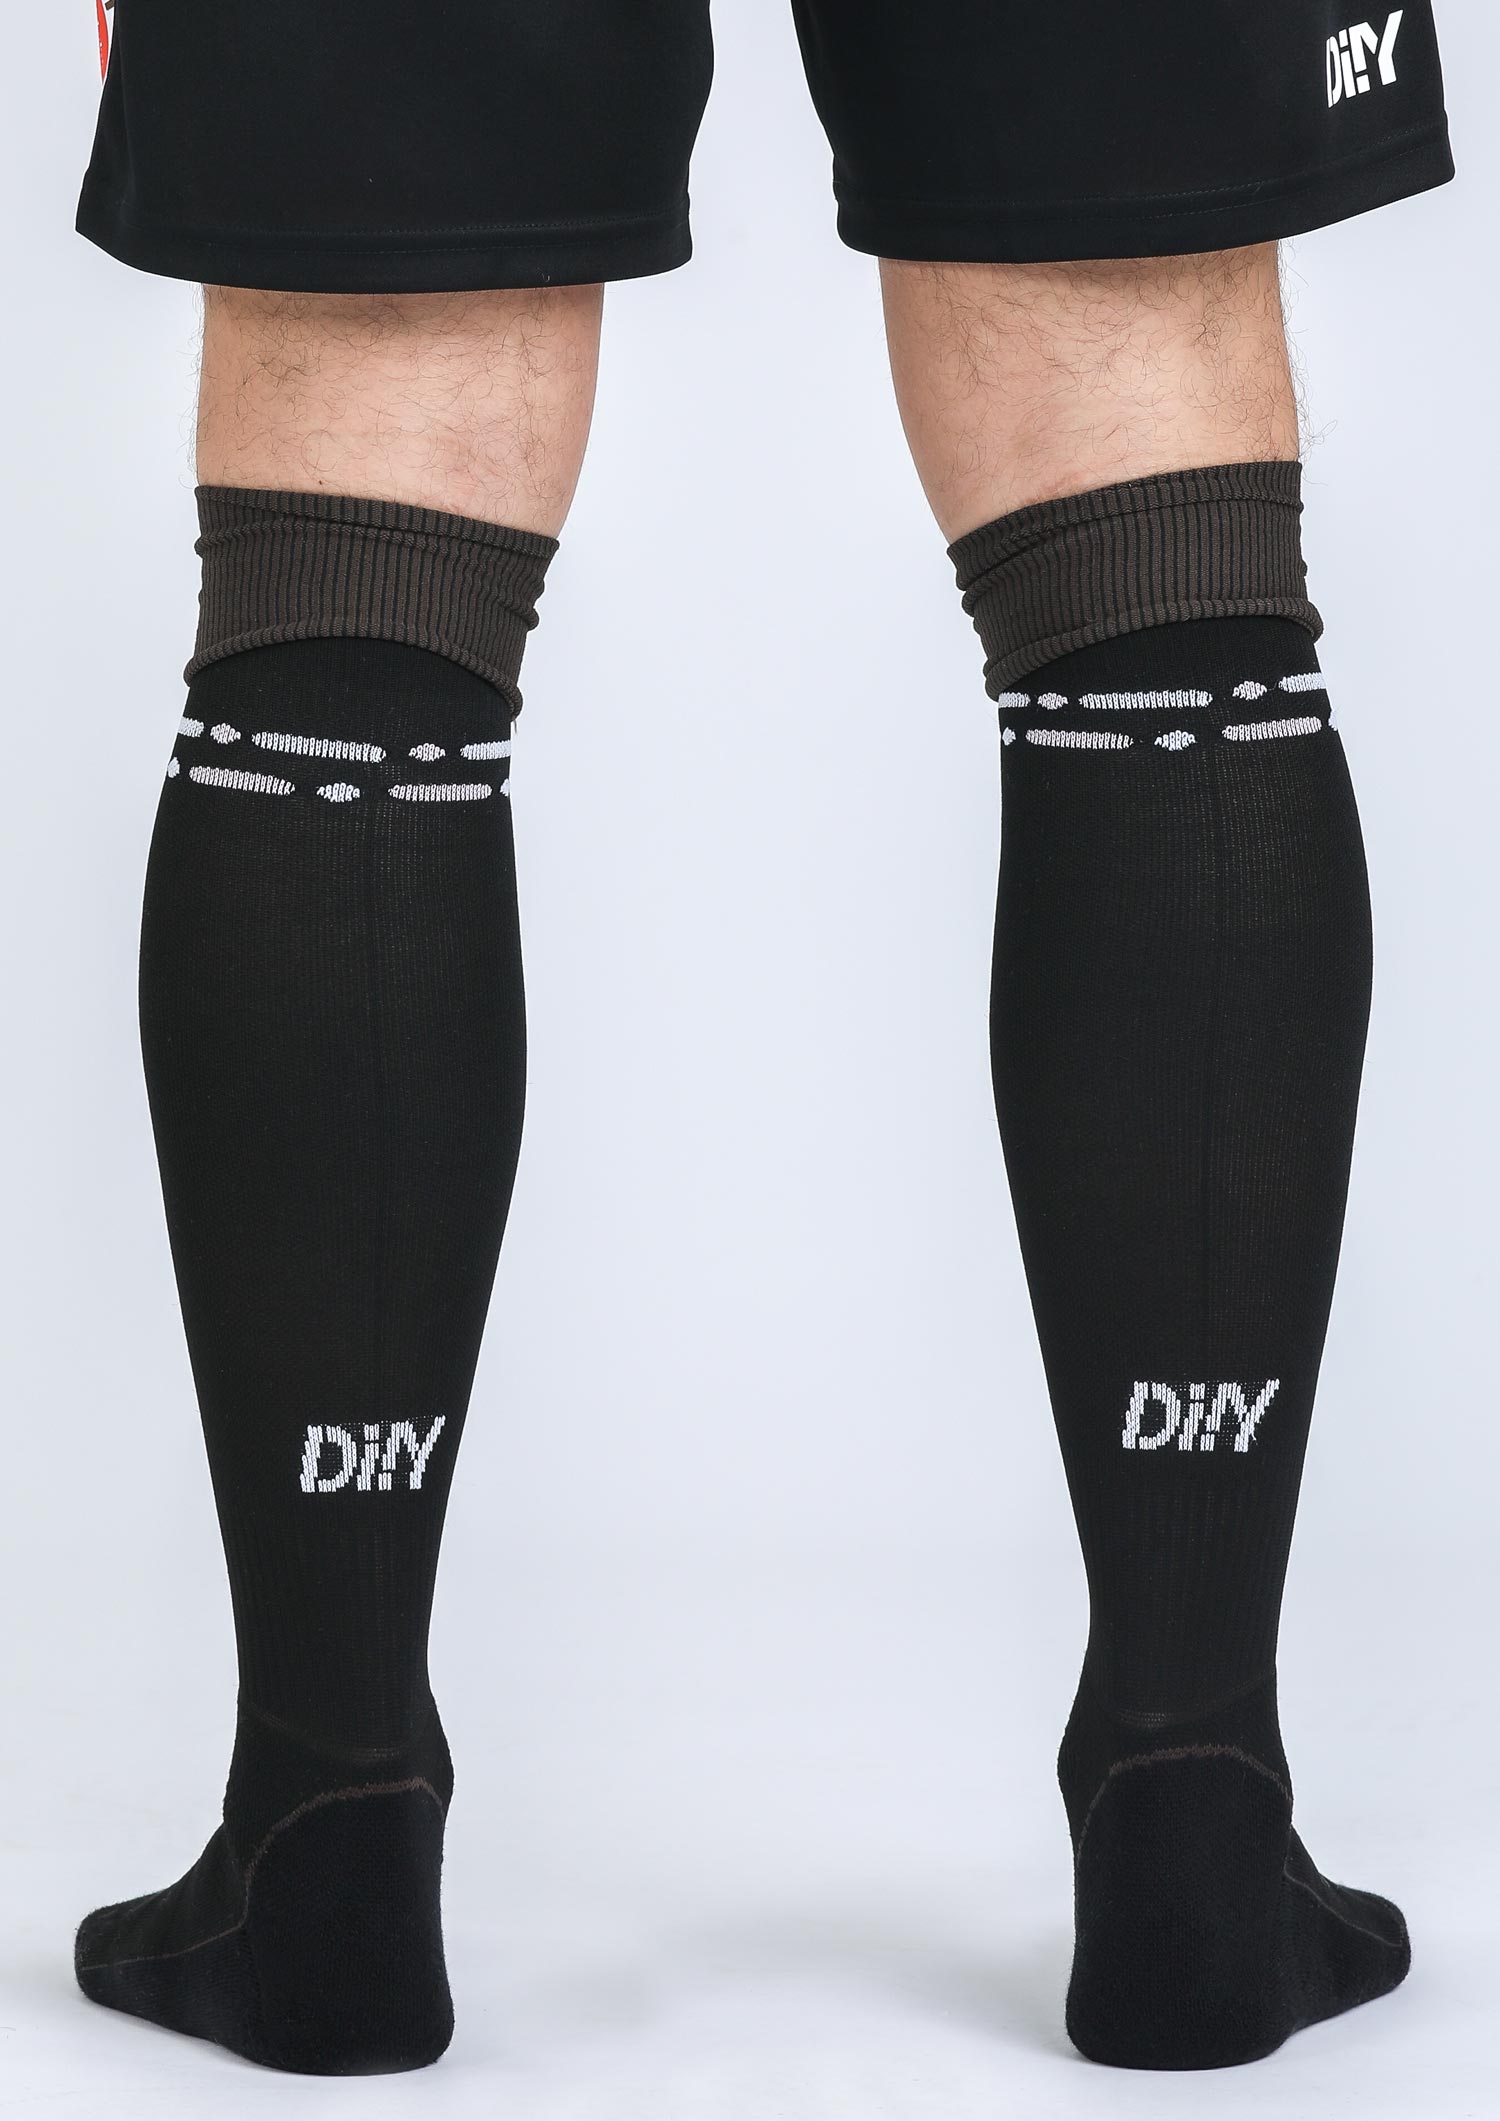 DIIY - Socks Third 2022-23